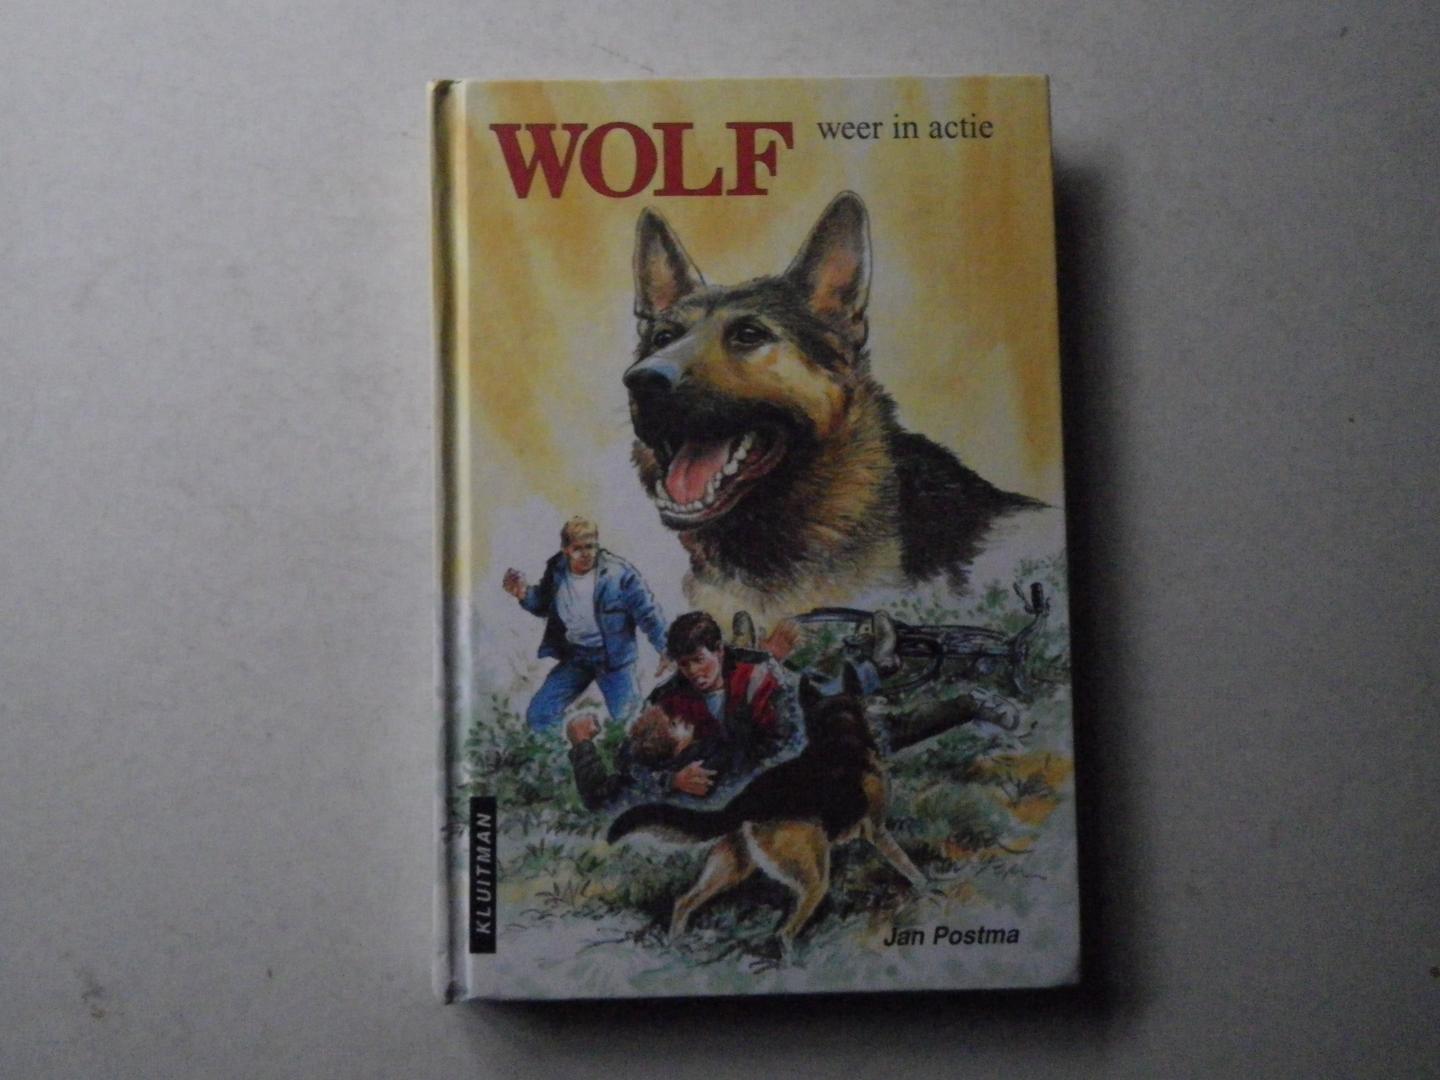 Postma, Jan - Wolf weer in actie (dl. 9 uit de Wolfserie)